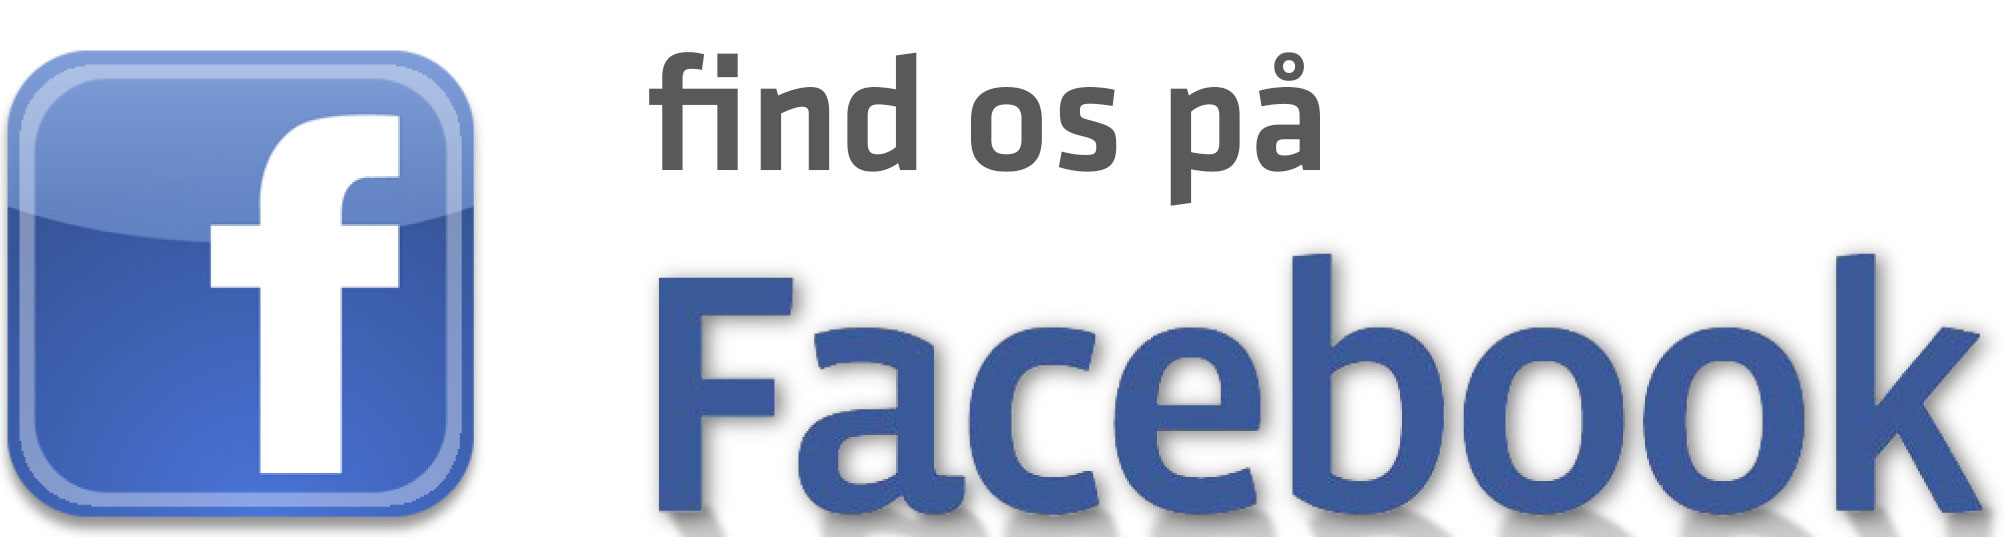 Åbn Techmasters facebook side, åbner i ny fane